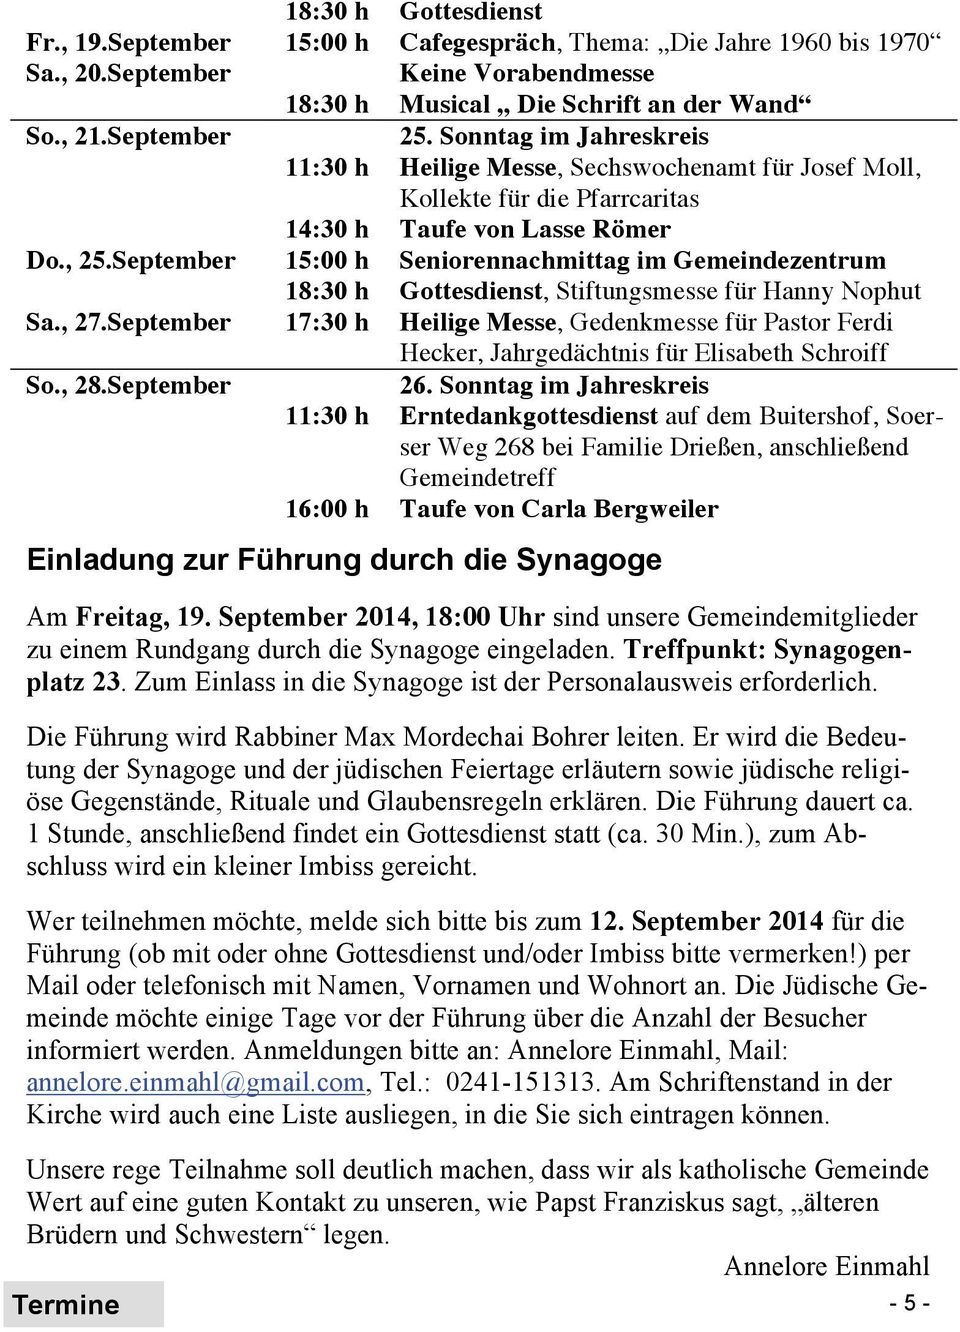 September 15:00 h Seniorennachmittag im Gemeindezentrum 18:30 h Gottesdienst, Stiftungsmesse für Hanny Nophut Sa., 27.